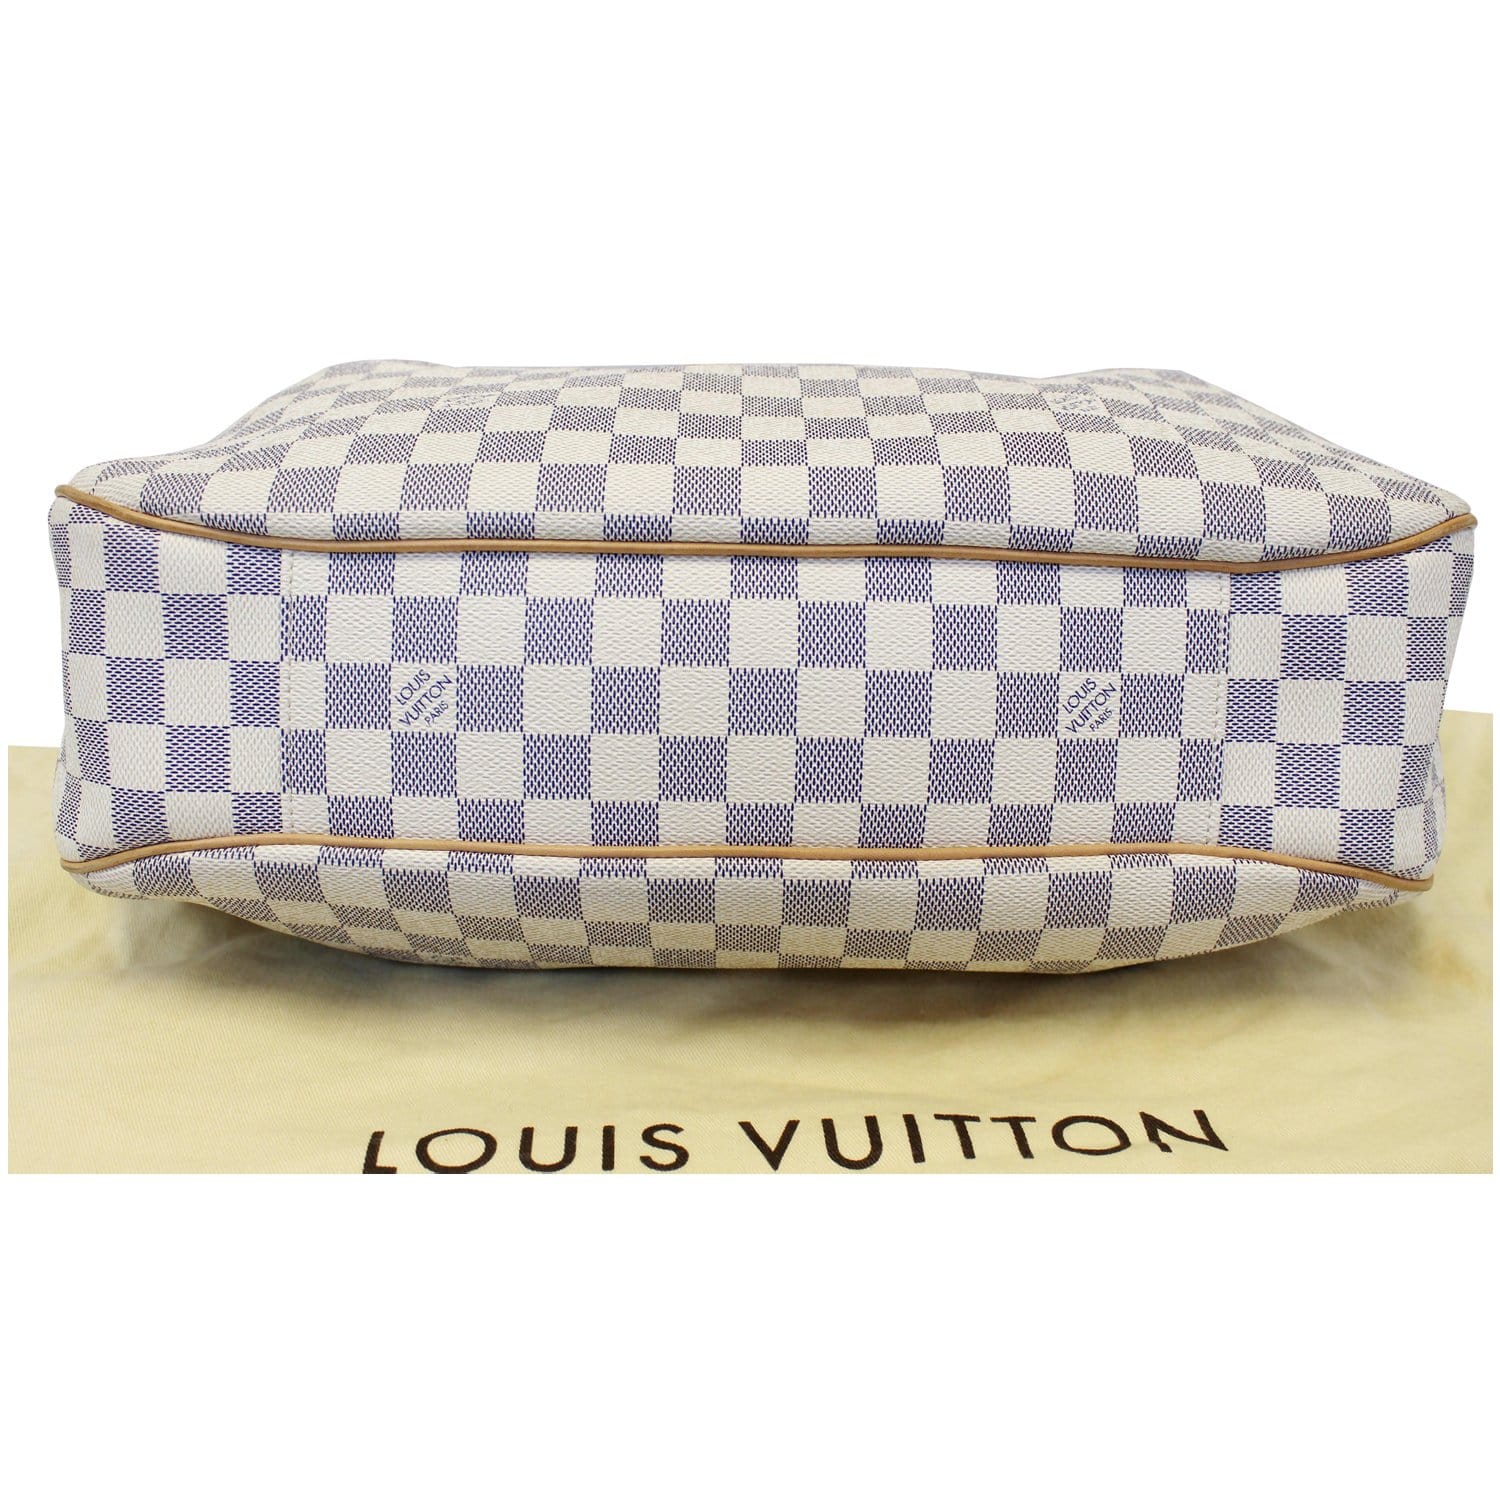 Louis Vuitton, Bags, Louis Vuitton Damier Azur Canvas Evora Mm Tote Bag